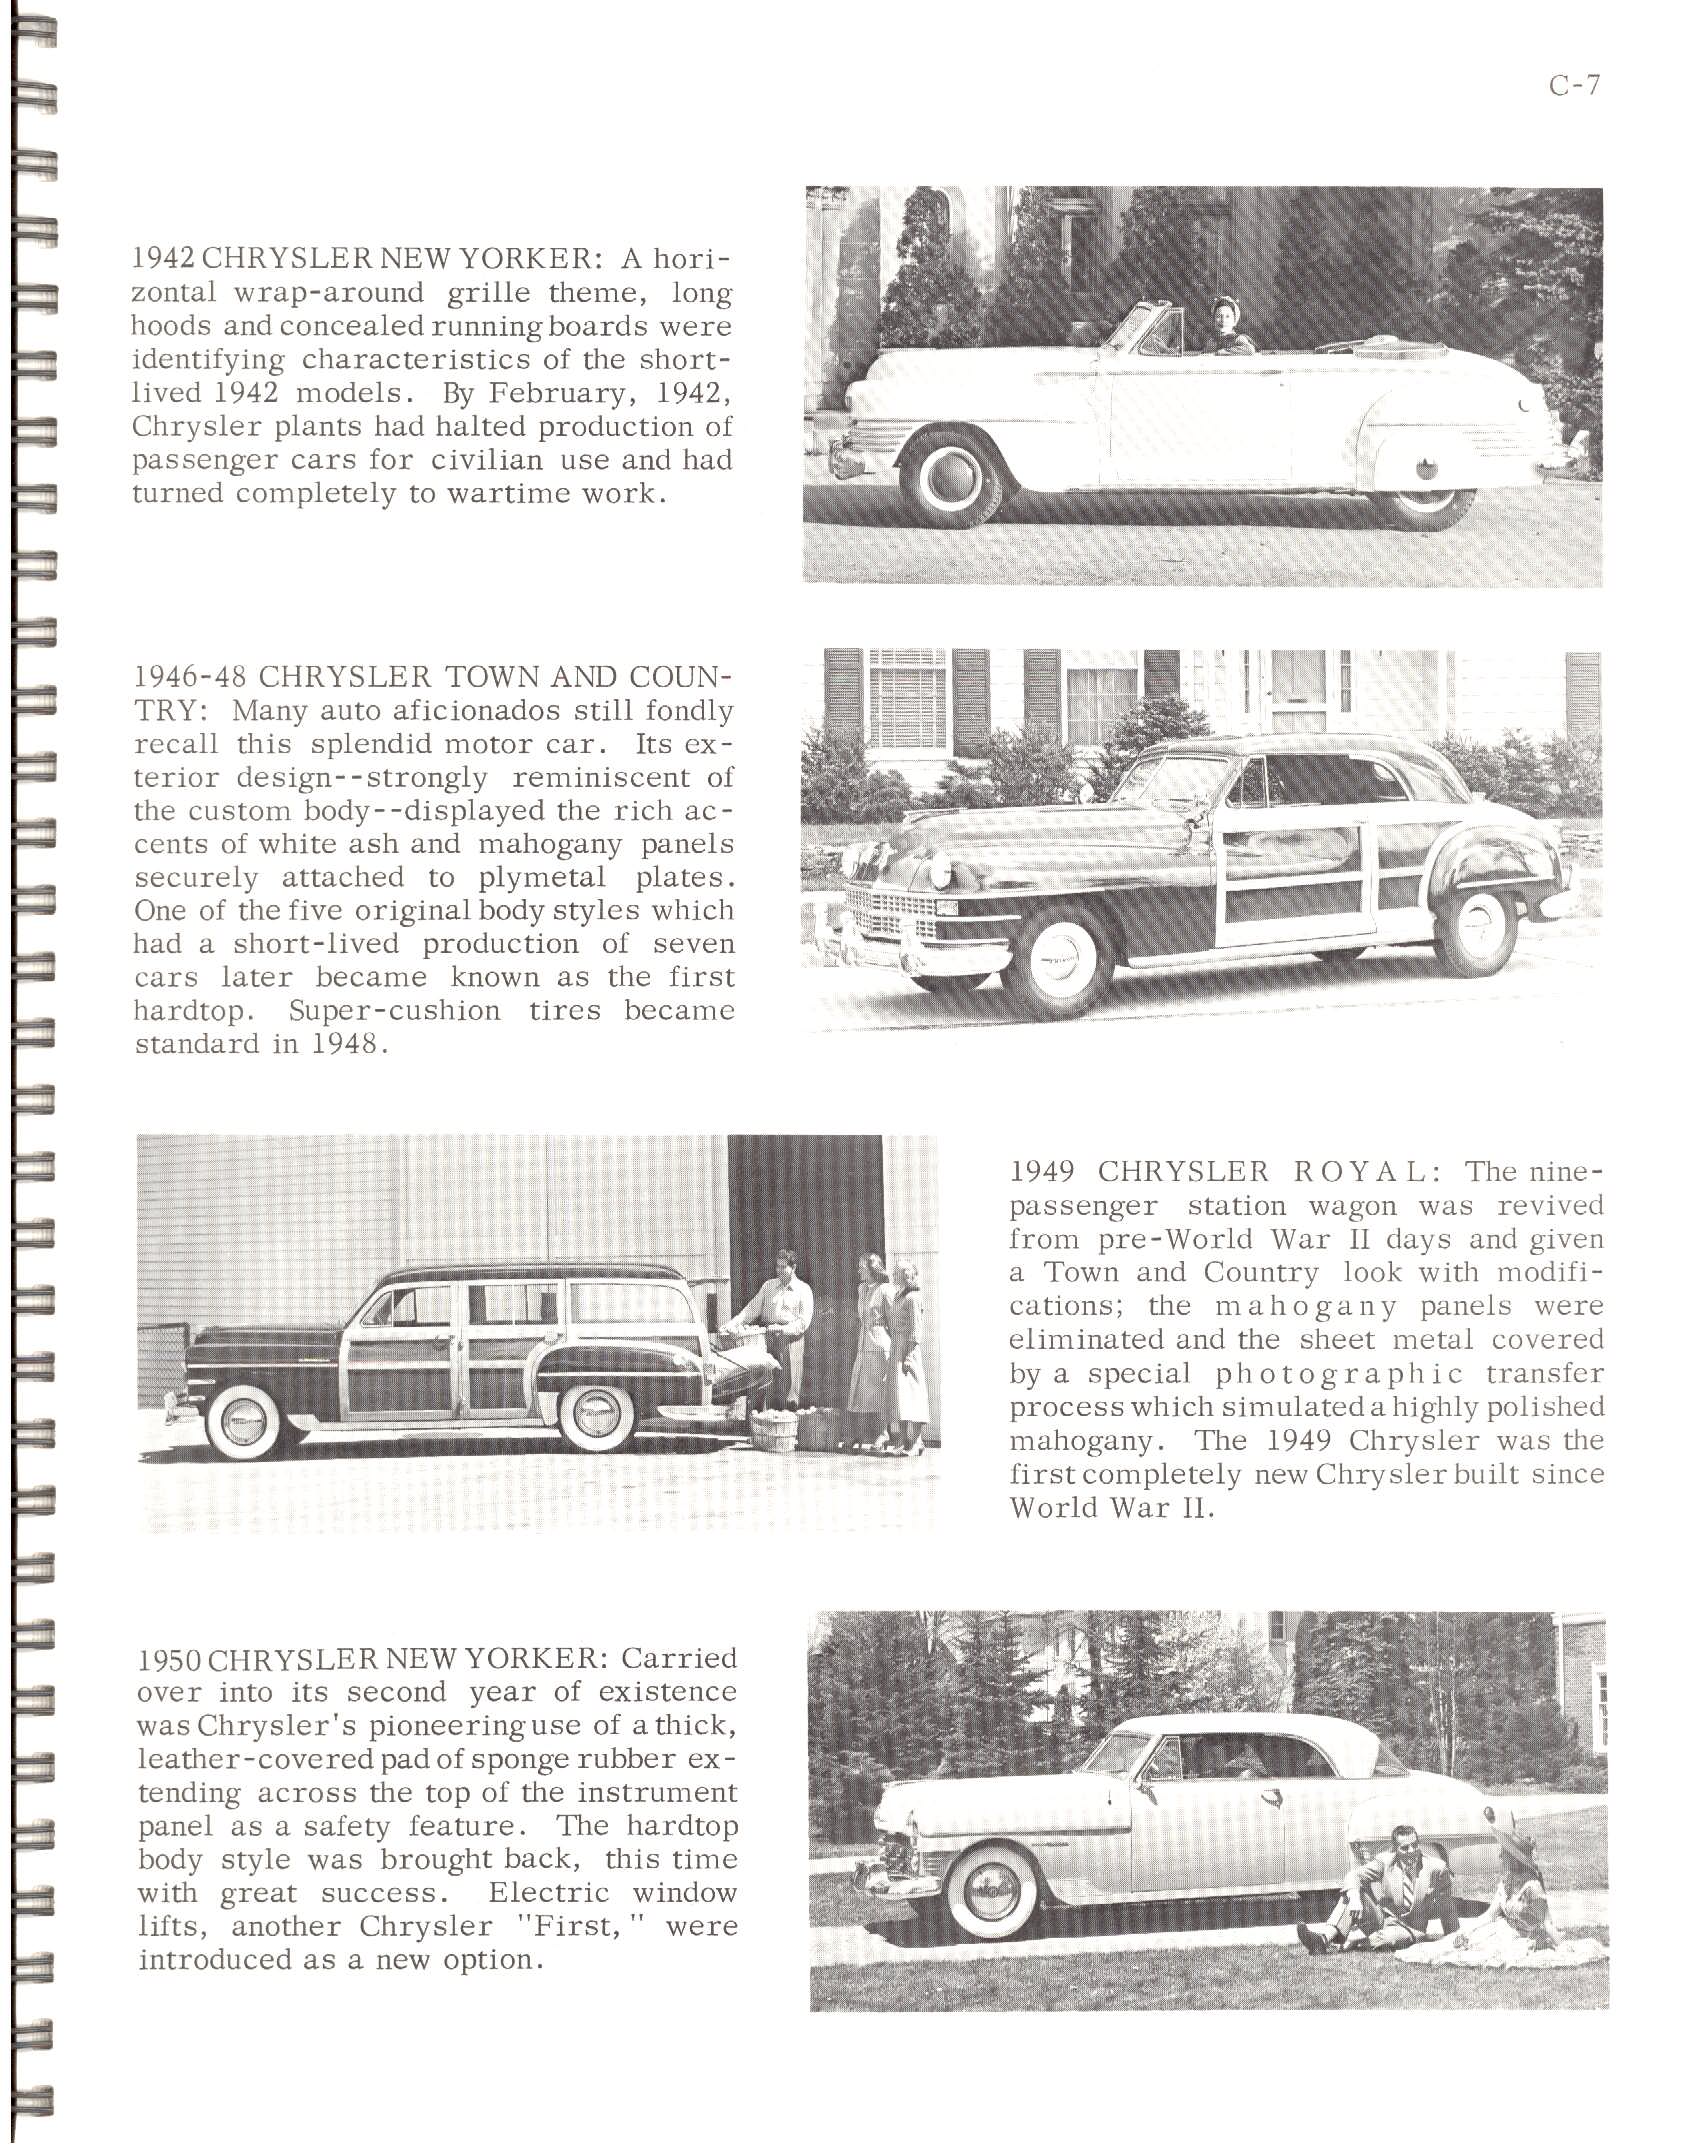 1966-History_Of_Chrysler_Cars-C07